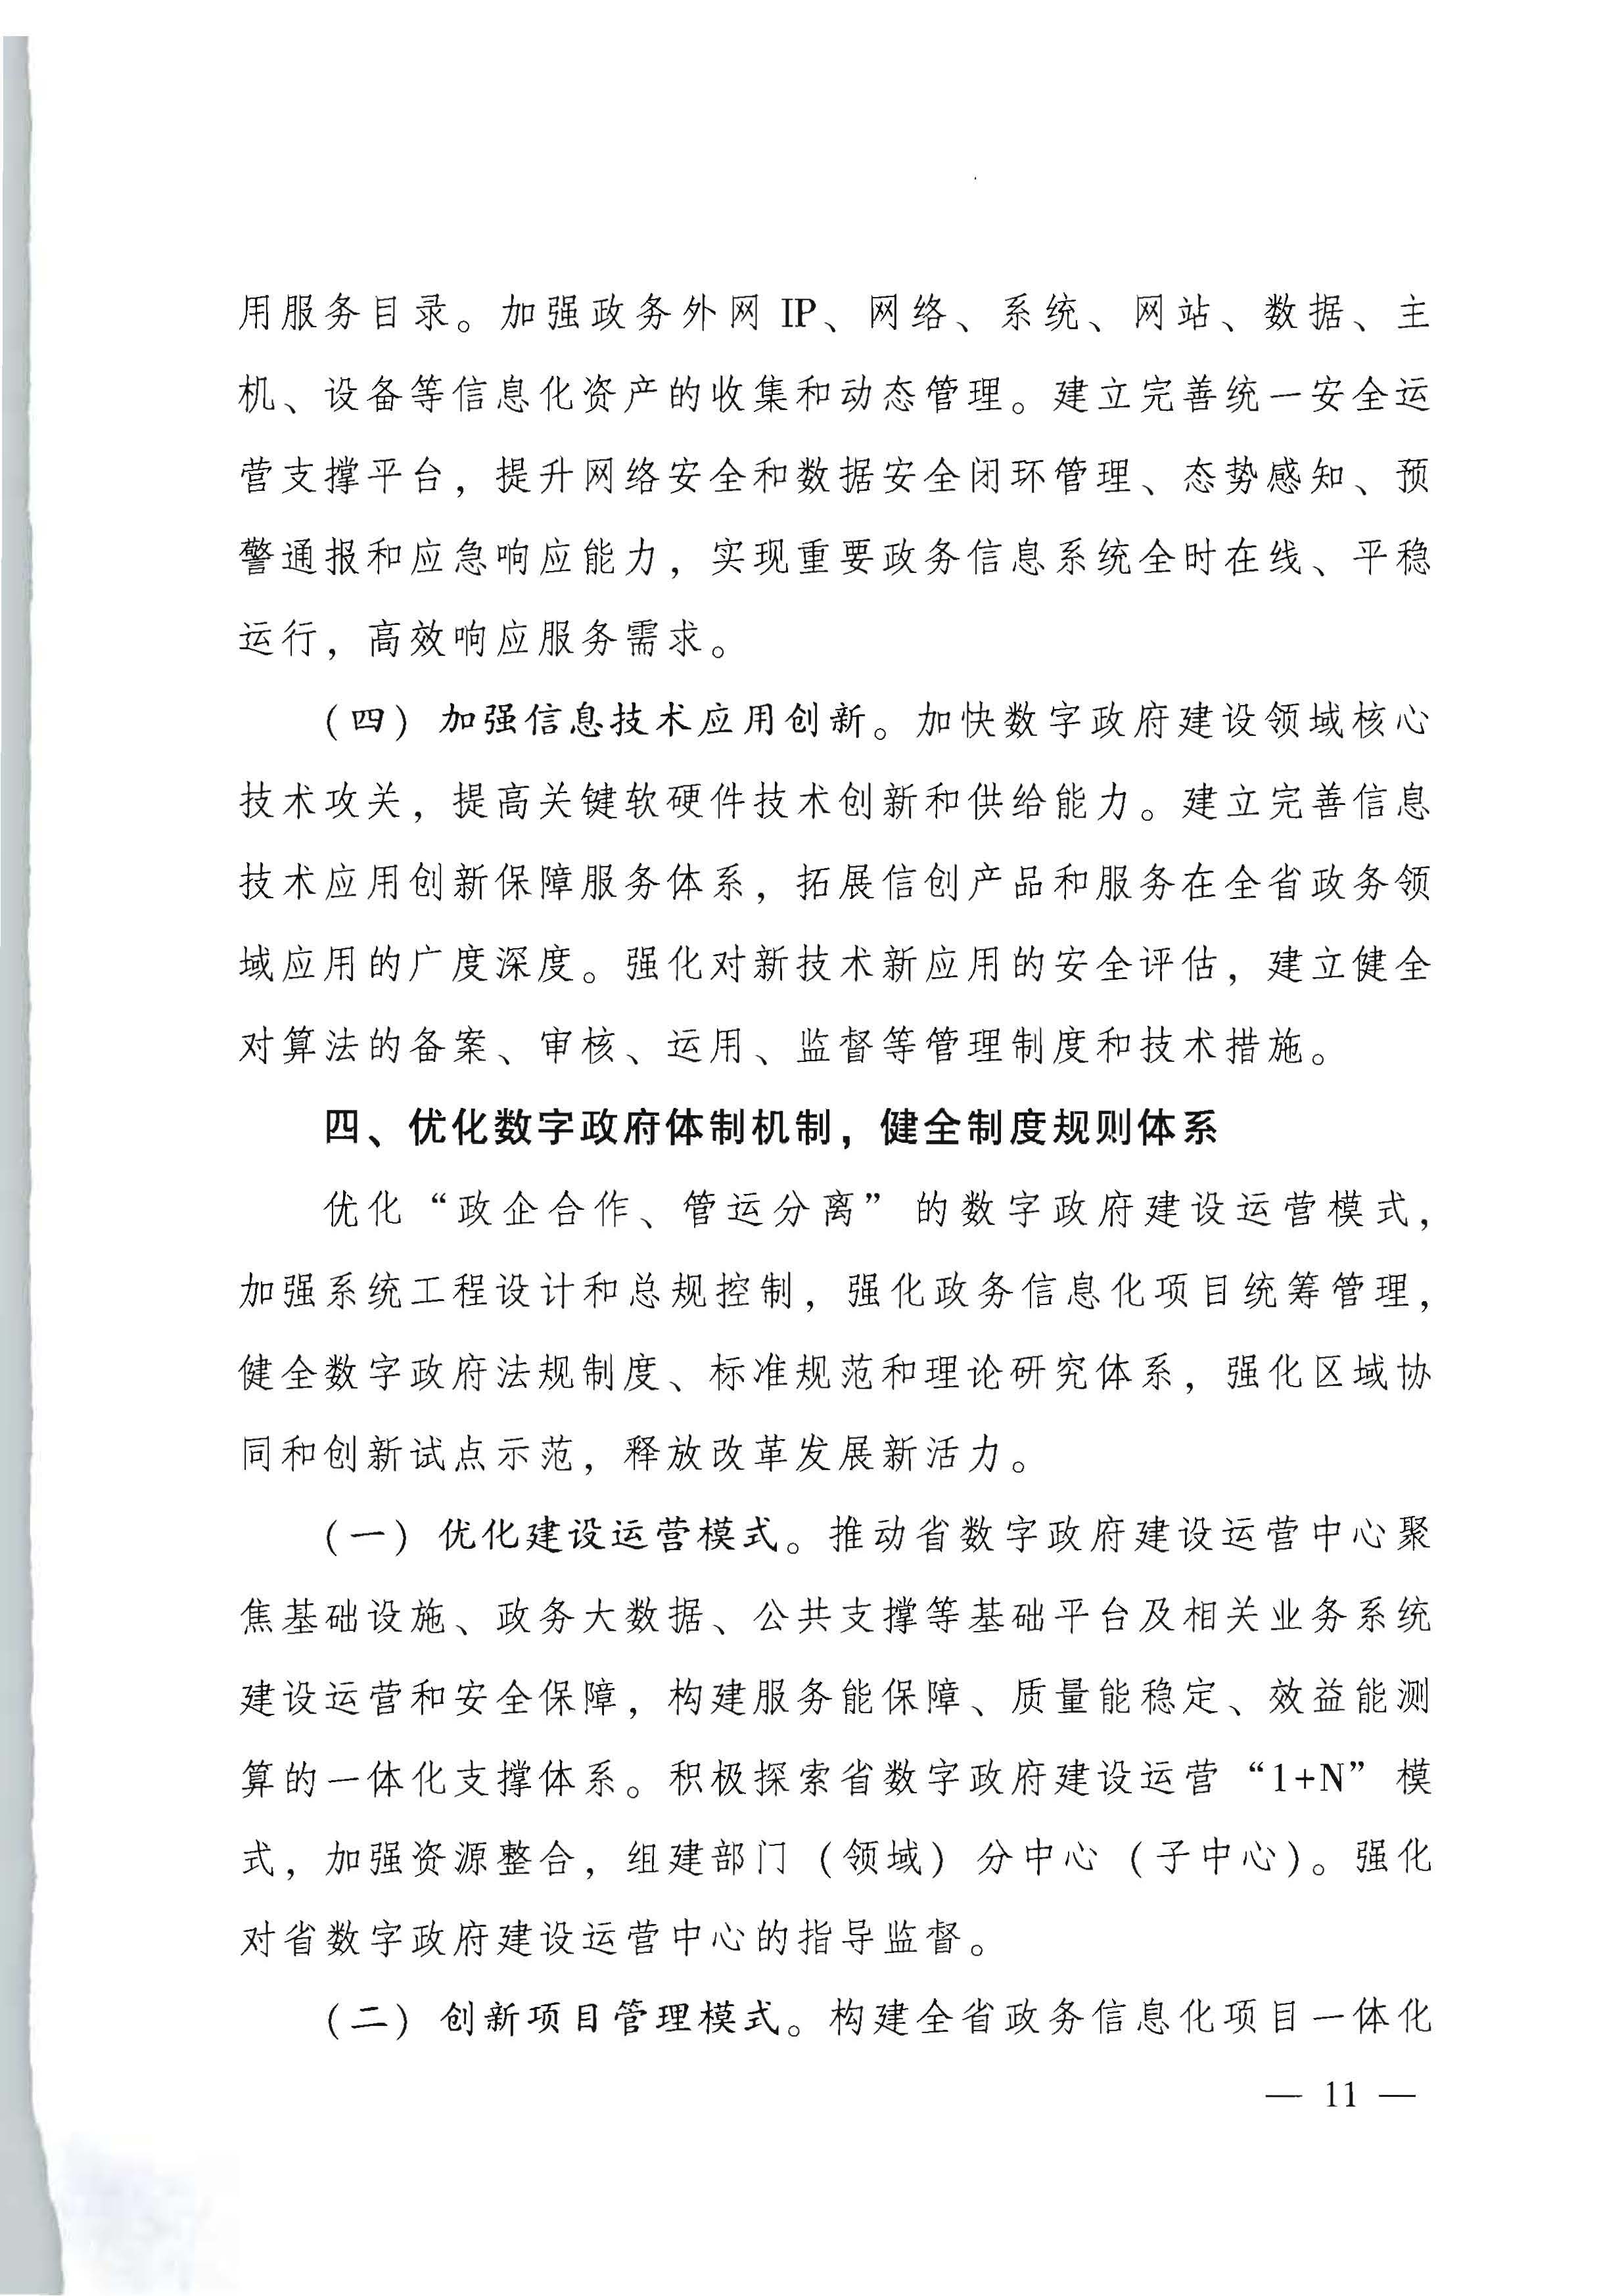 广东省人民政府关于进一步深化数字政府改革建设的实施意见_页面_11.jpg